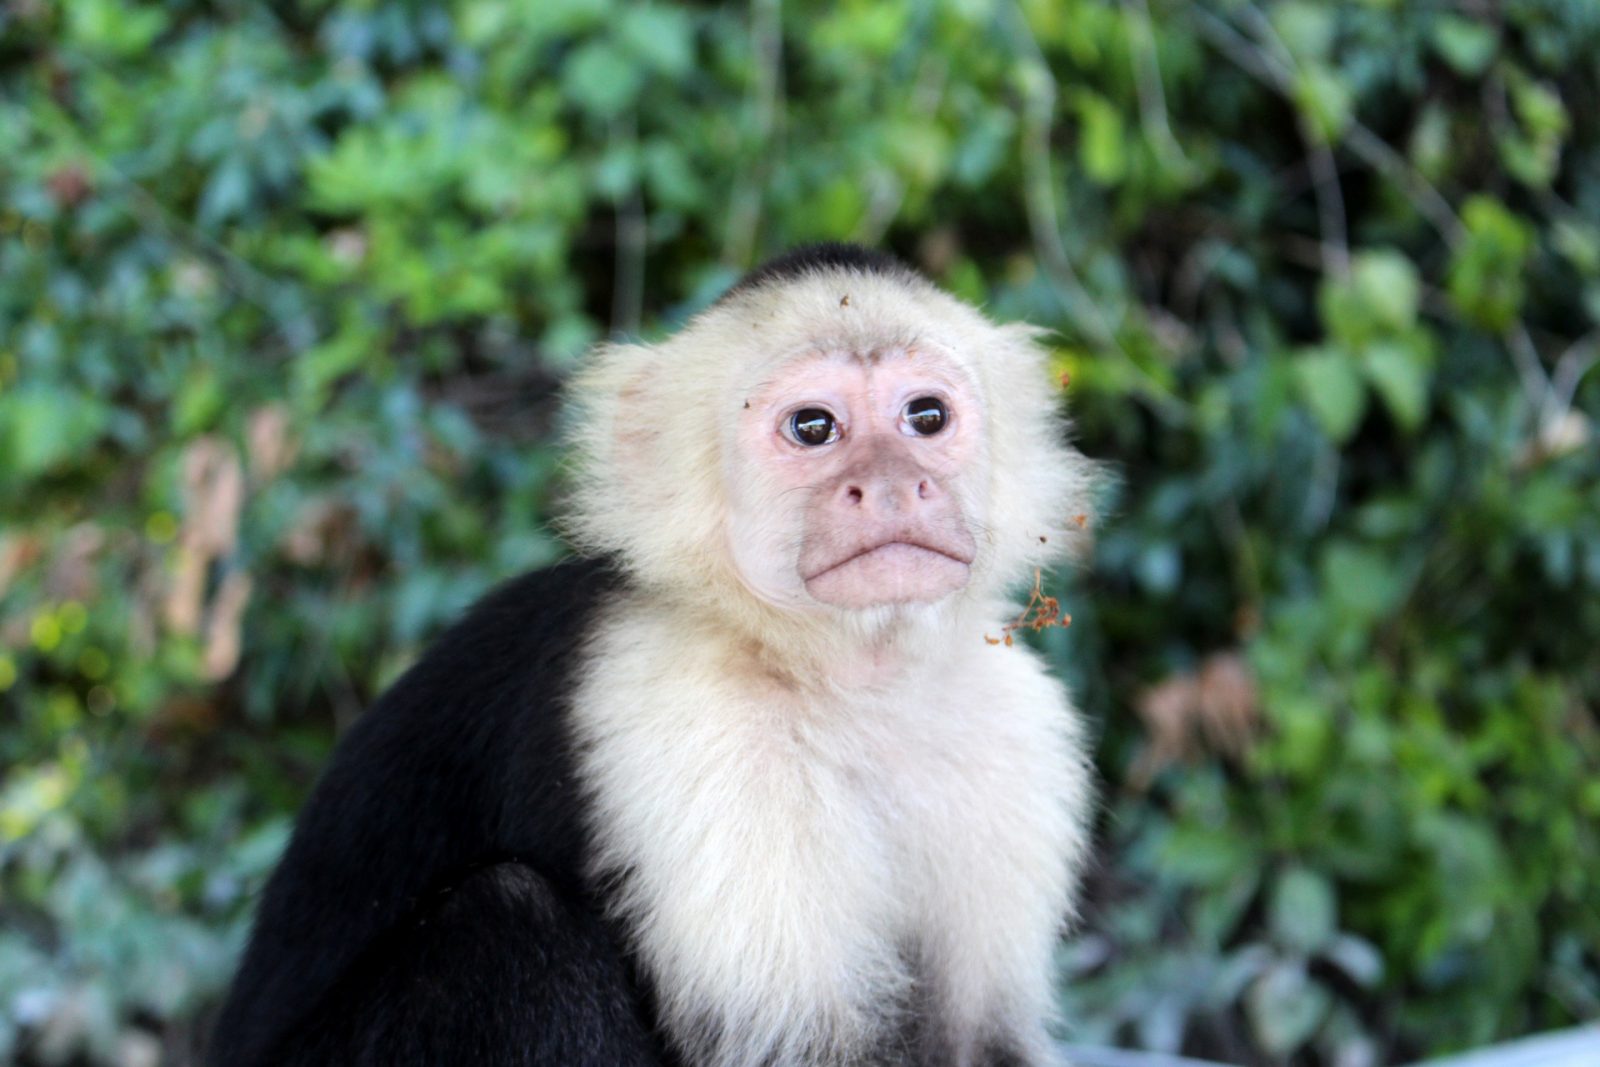 Monkey inside Tayrona National Park, parque tayrona